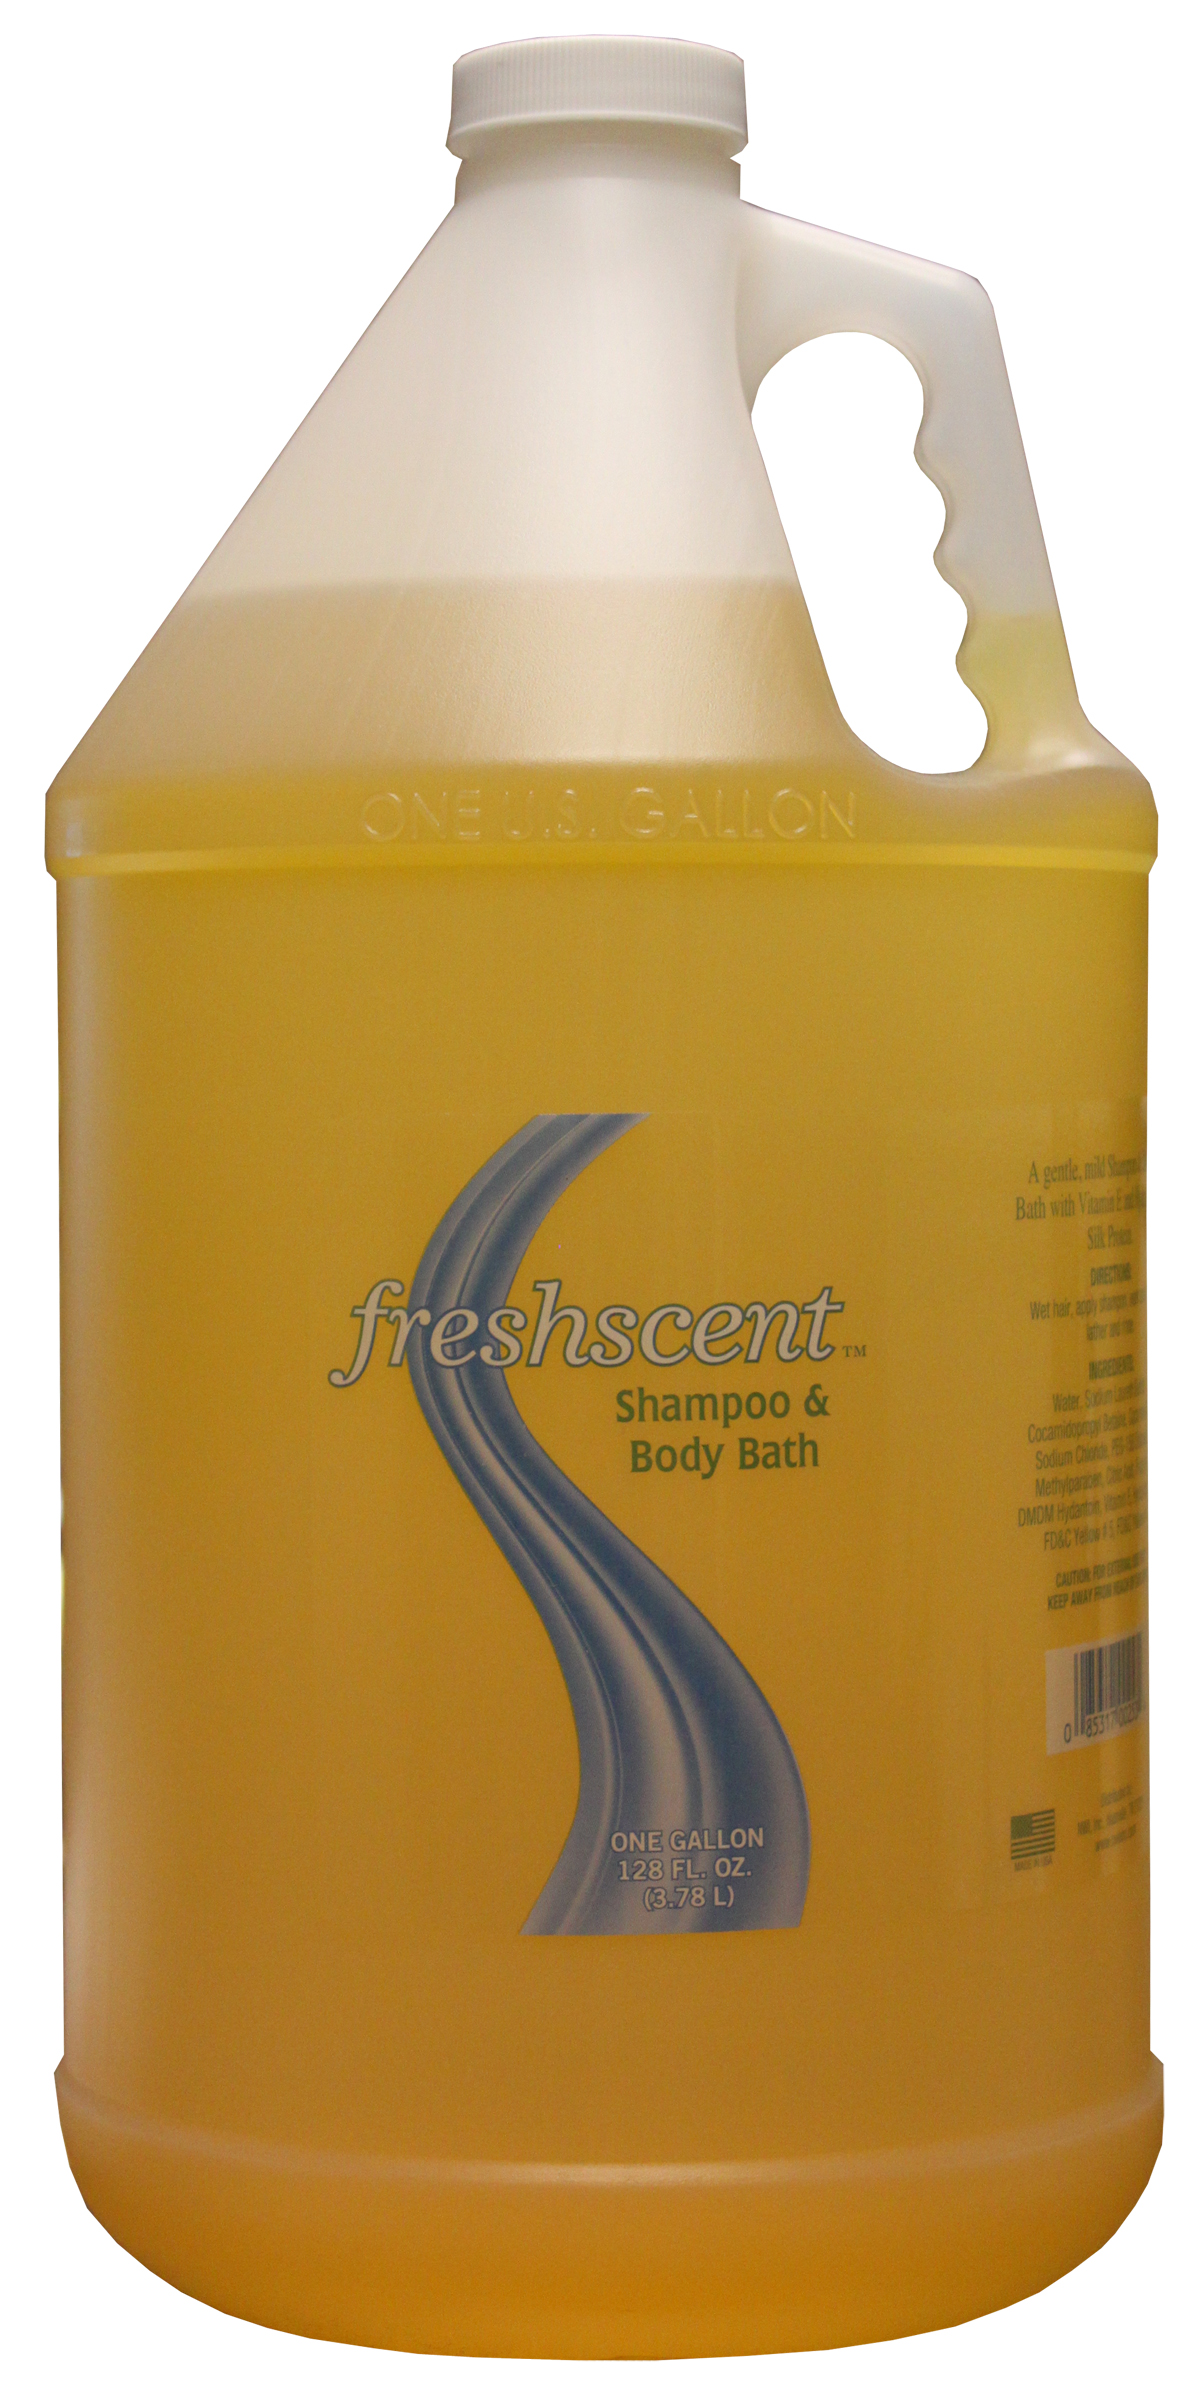 Freshscent 1 Gallon Shampoo & Body Wash (Clear Bottle)